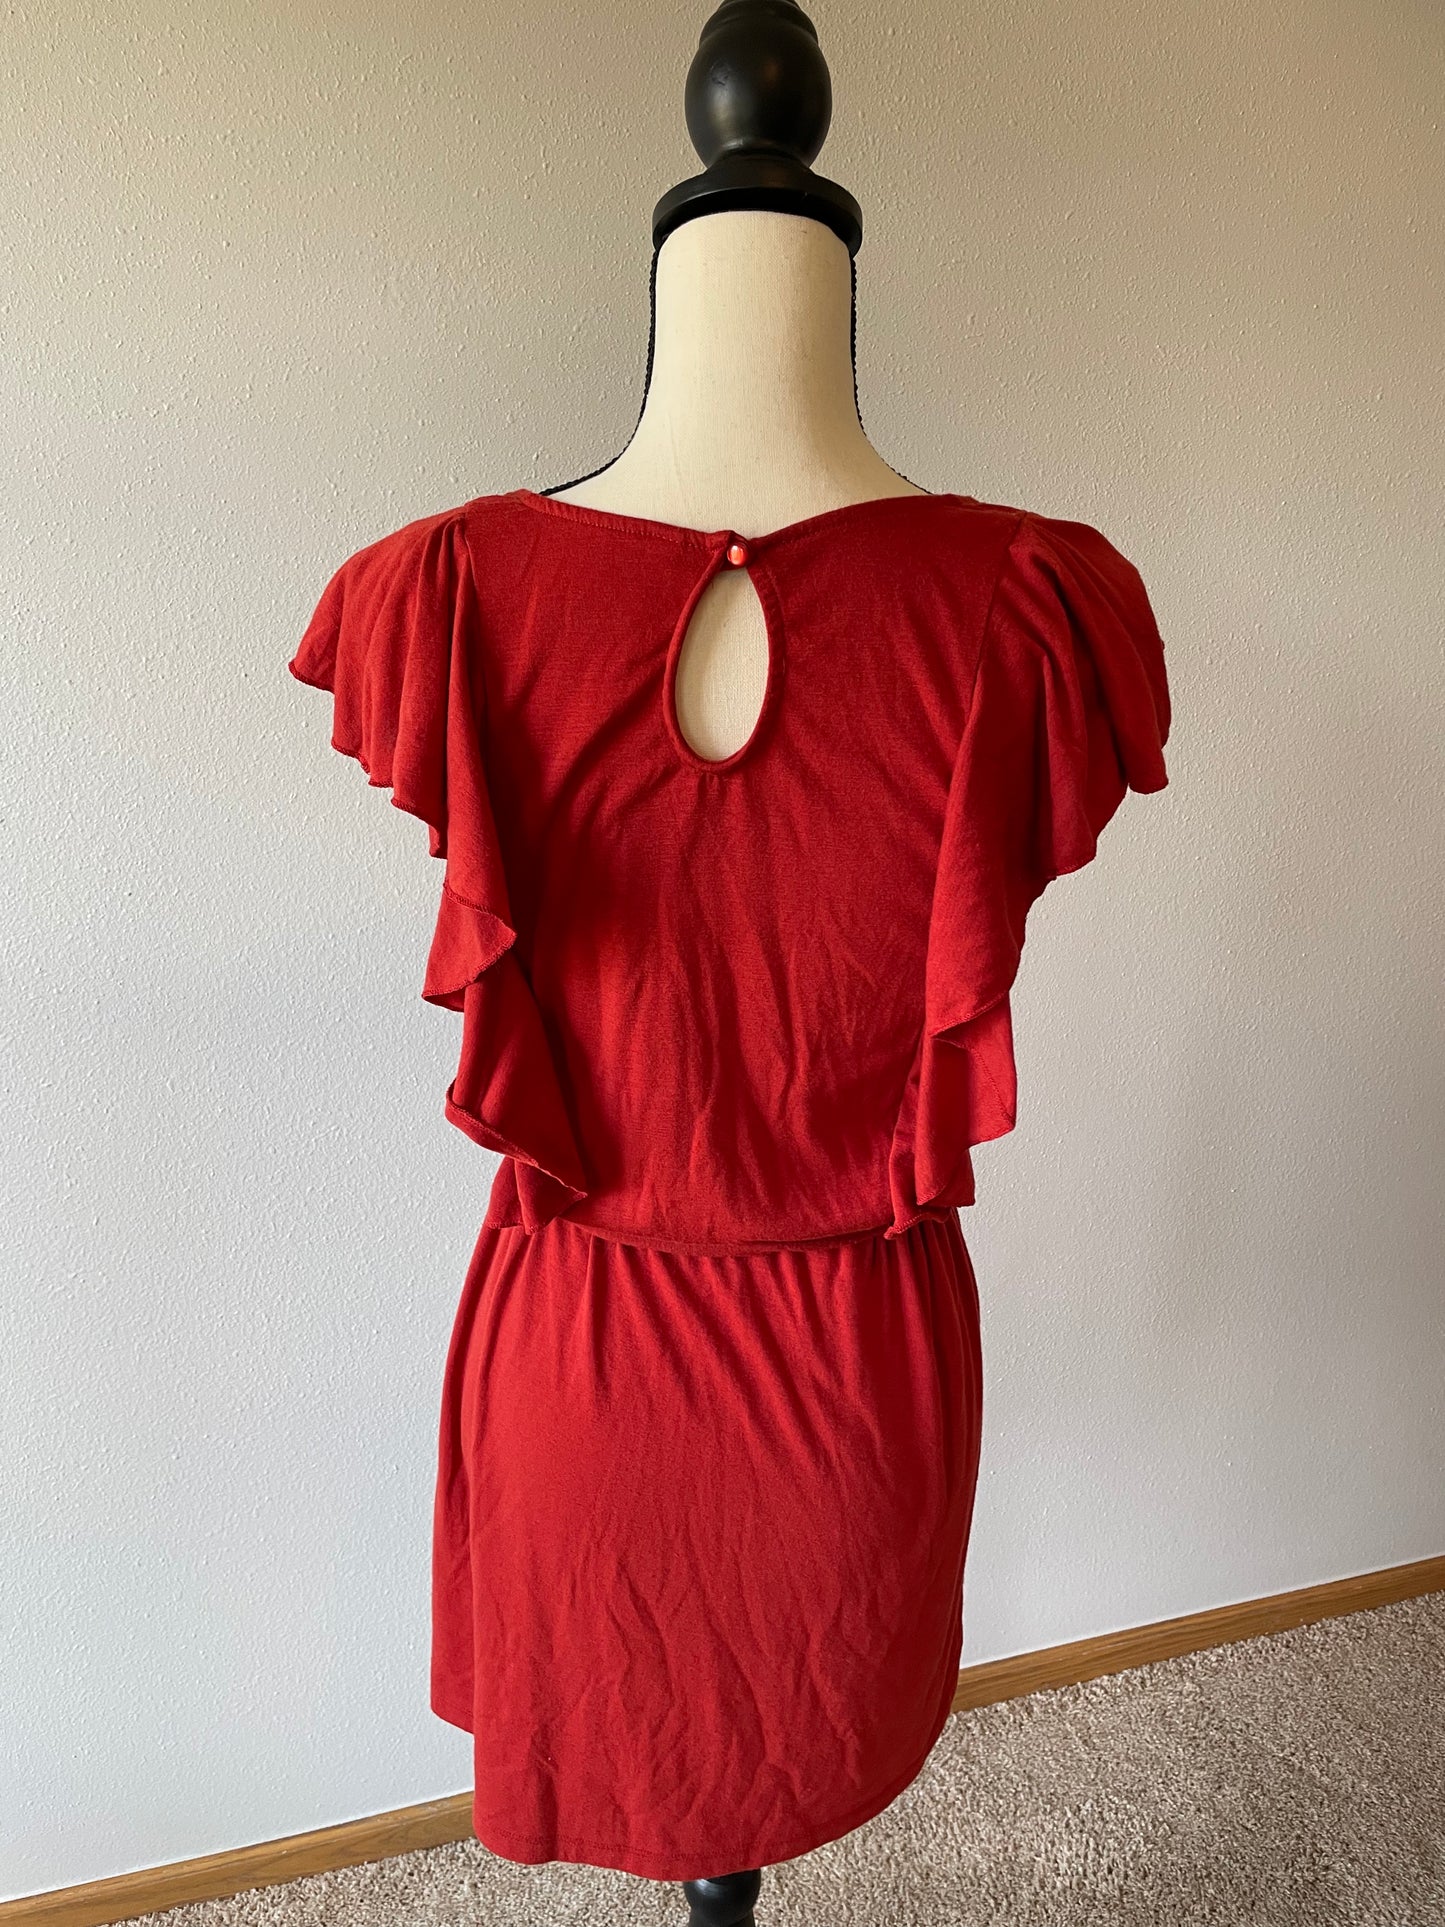 Xhilaration Red Knit Tie Waist Dress (M)